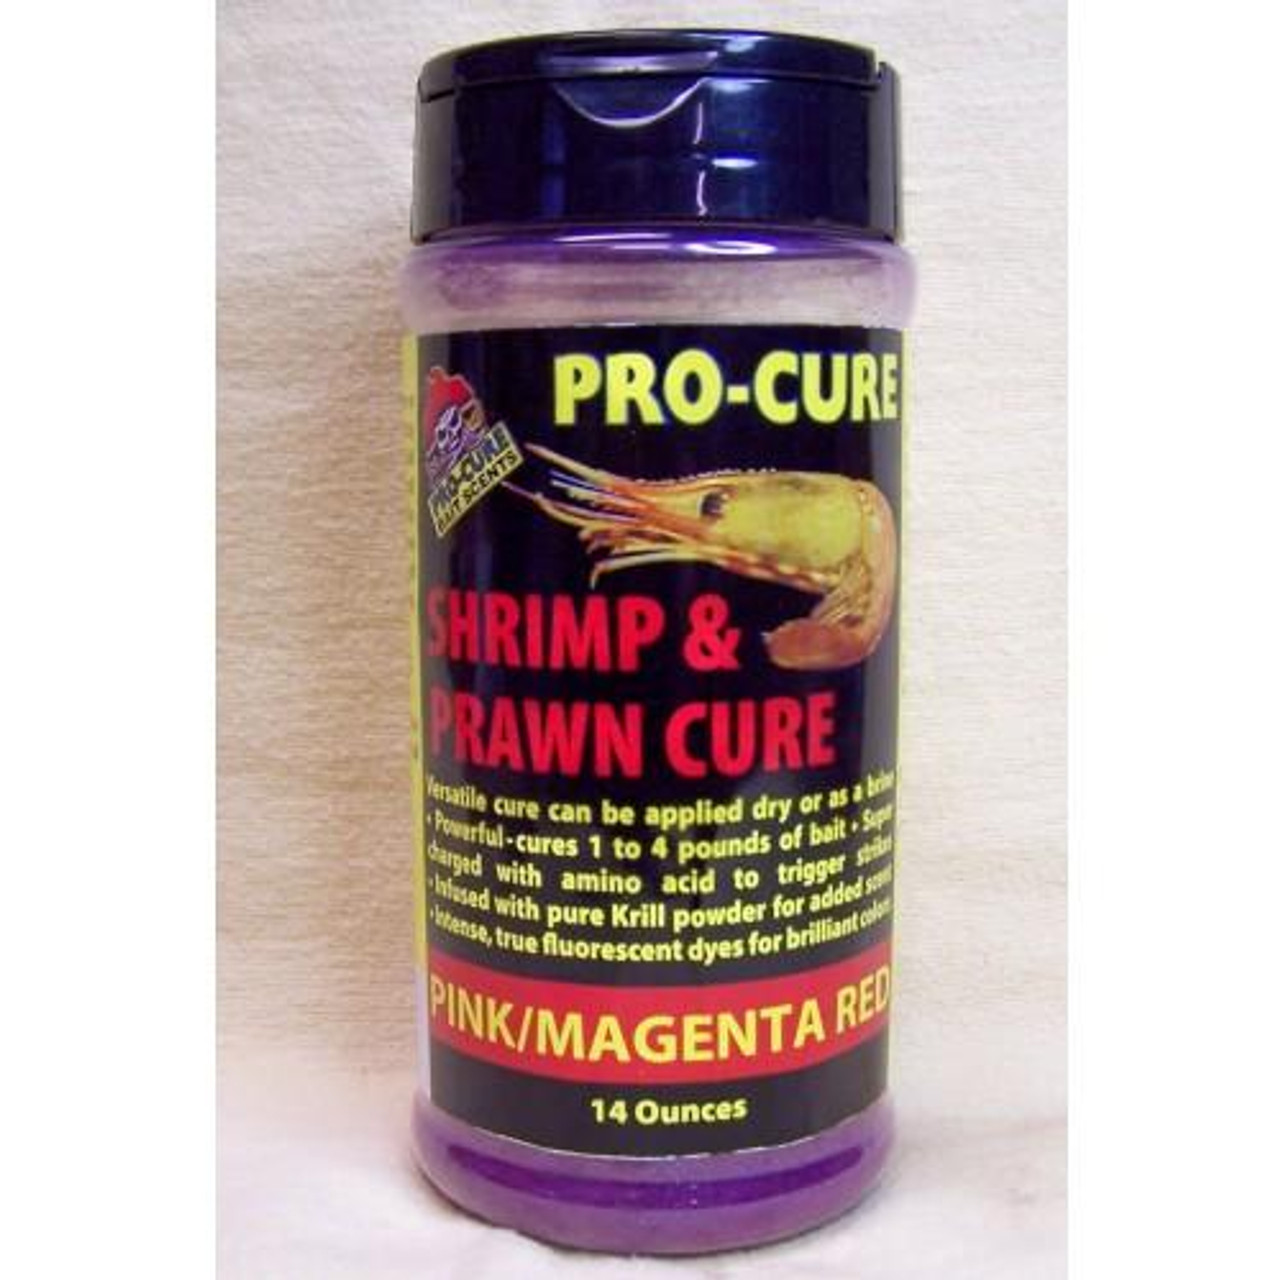 Pro-Cure Shrimp & Prawn Cure 14oz